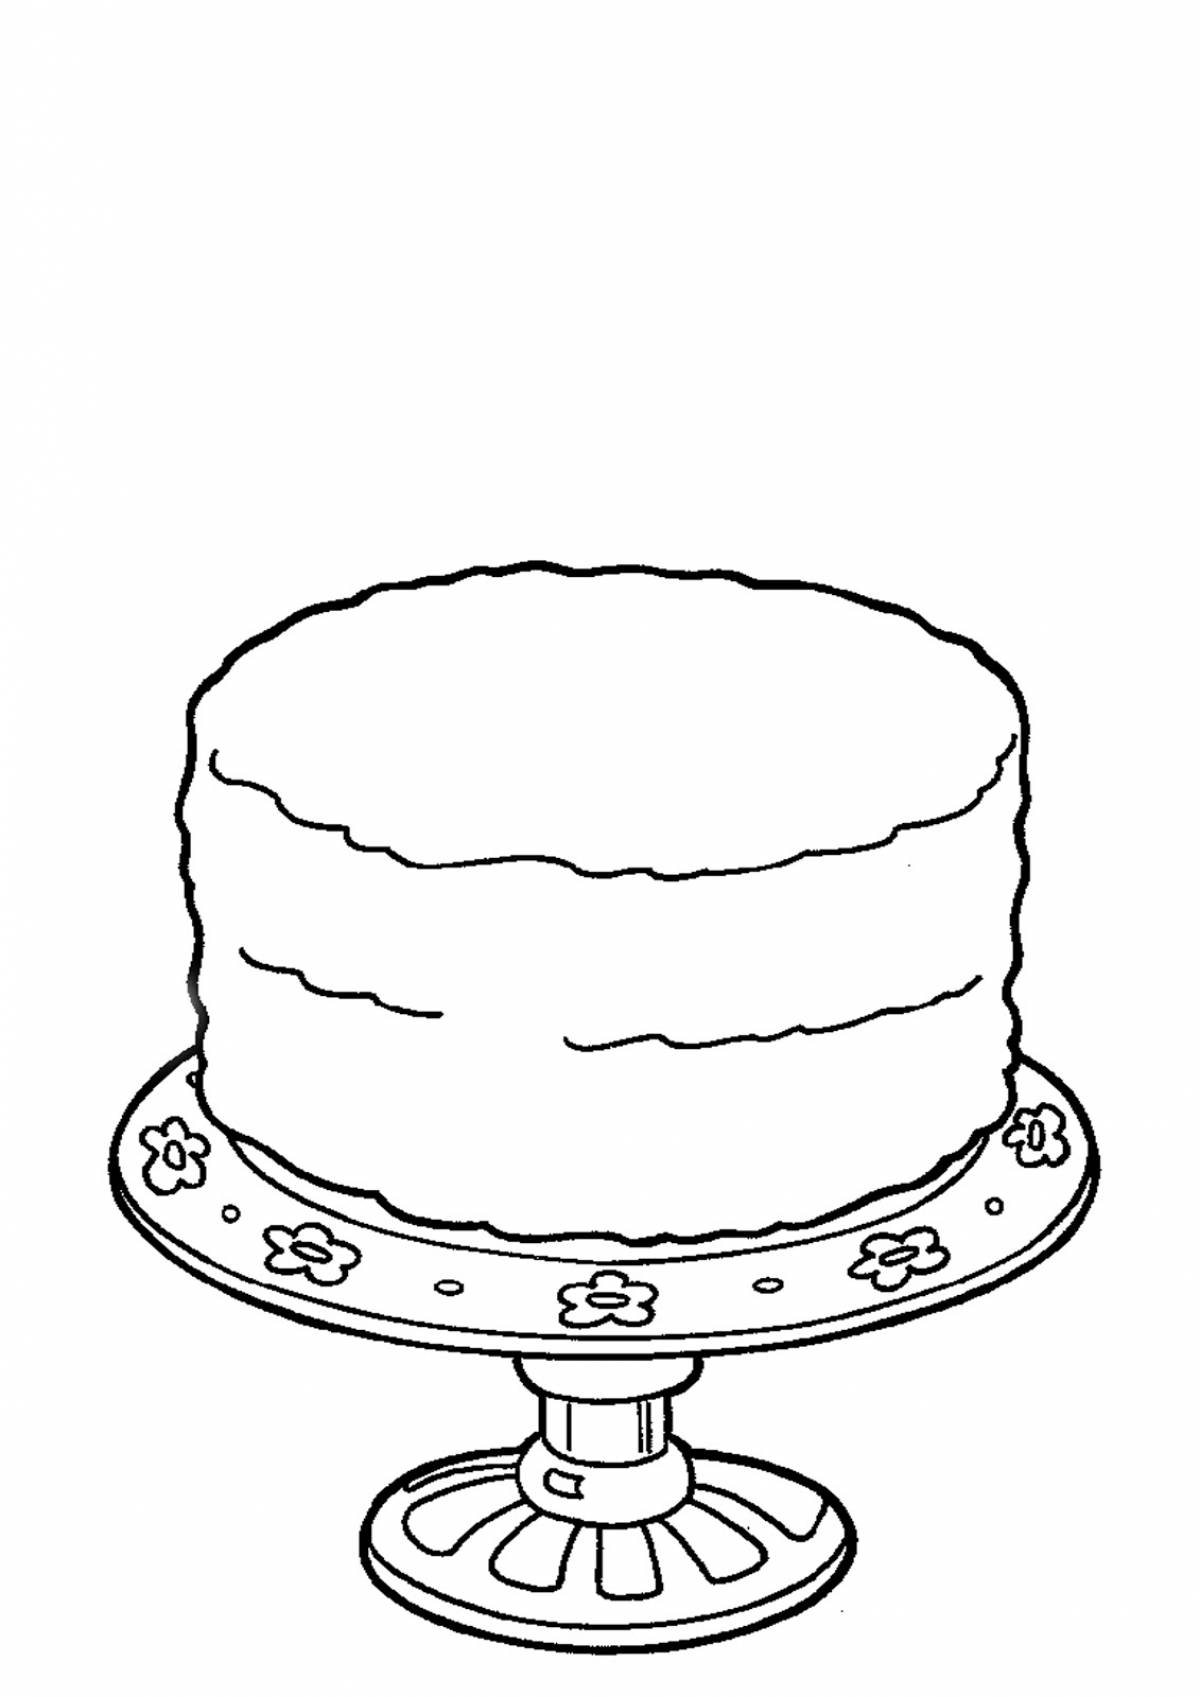 Изображения по запросу Раскраска торт